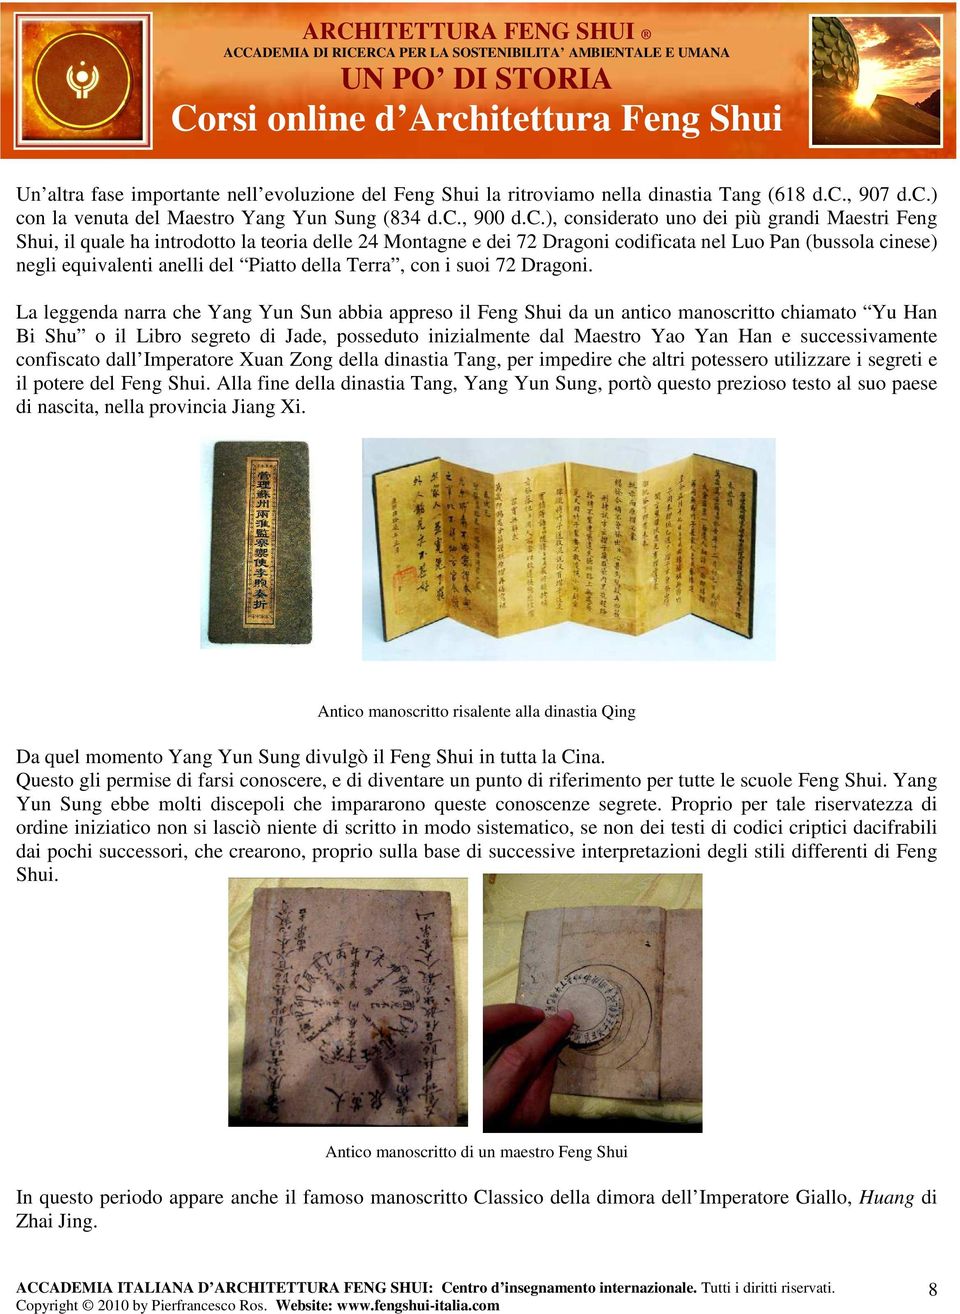 ) con la venuta del Maestro Yang Yun Sung (834 d.c., 900 d.c.), considerato uno dei più grandi Maestri Feng Shui, il quale ha introdotto la teoria delle 24 Montagne e dei 72 Dragoni codificata nel